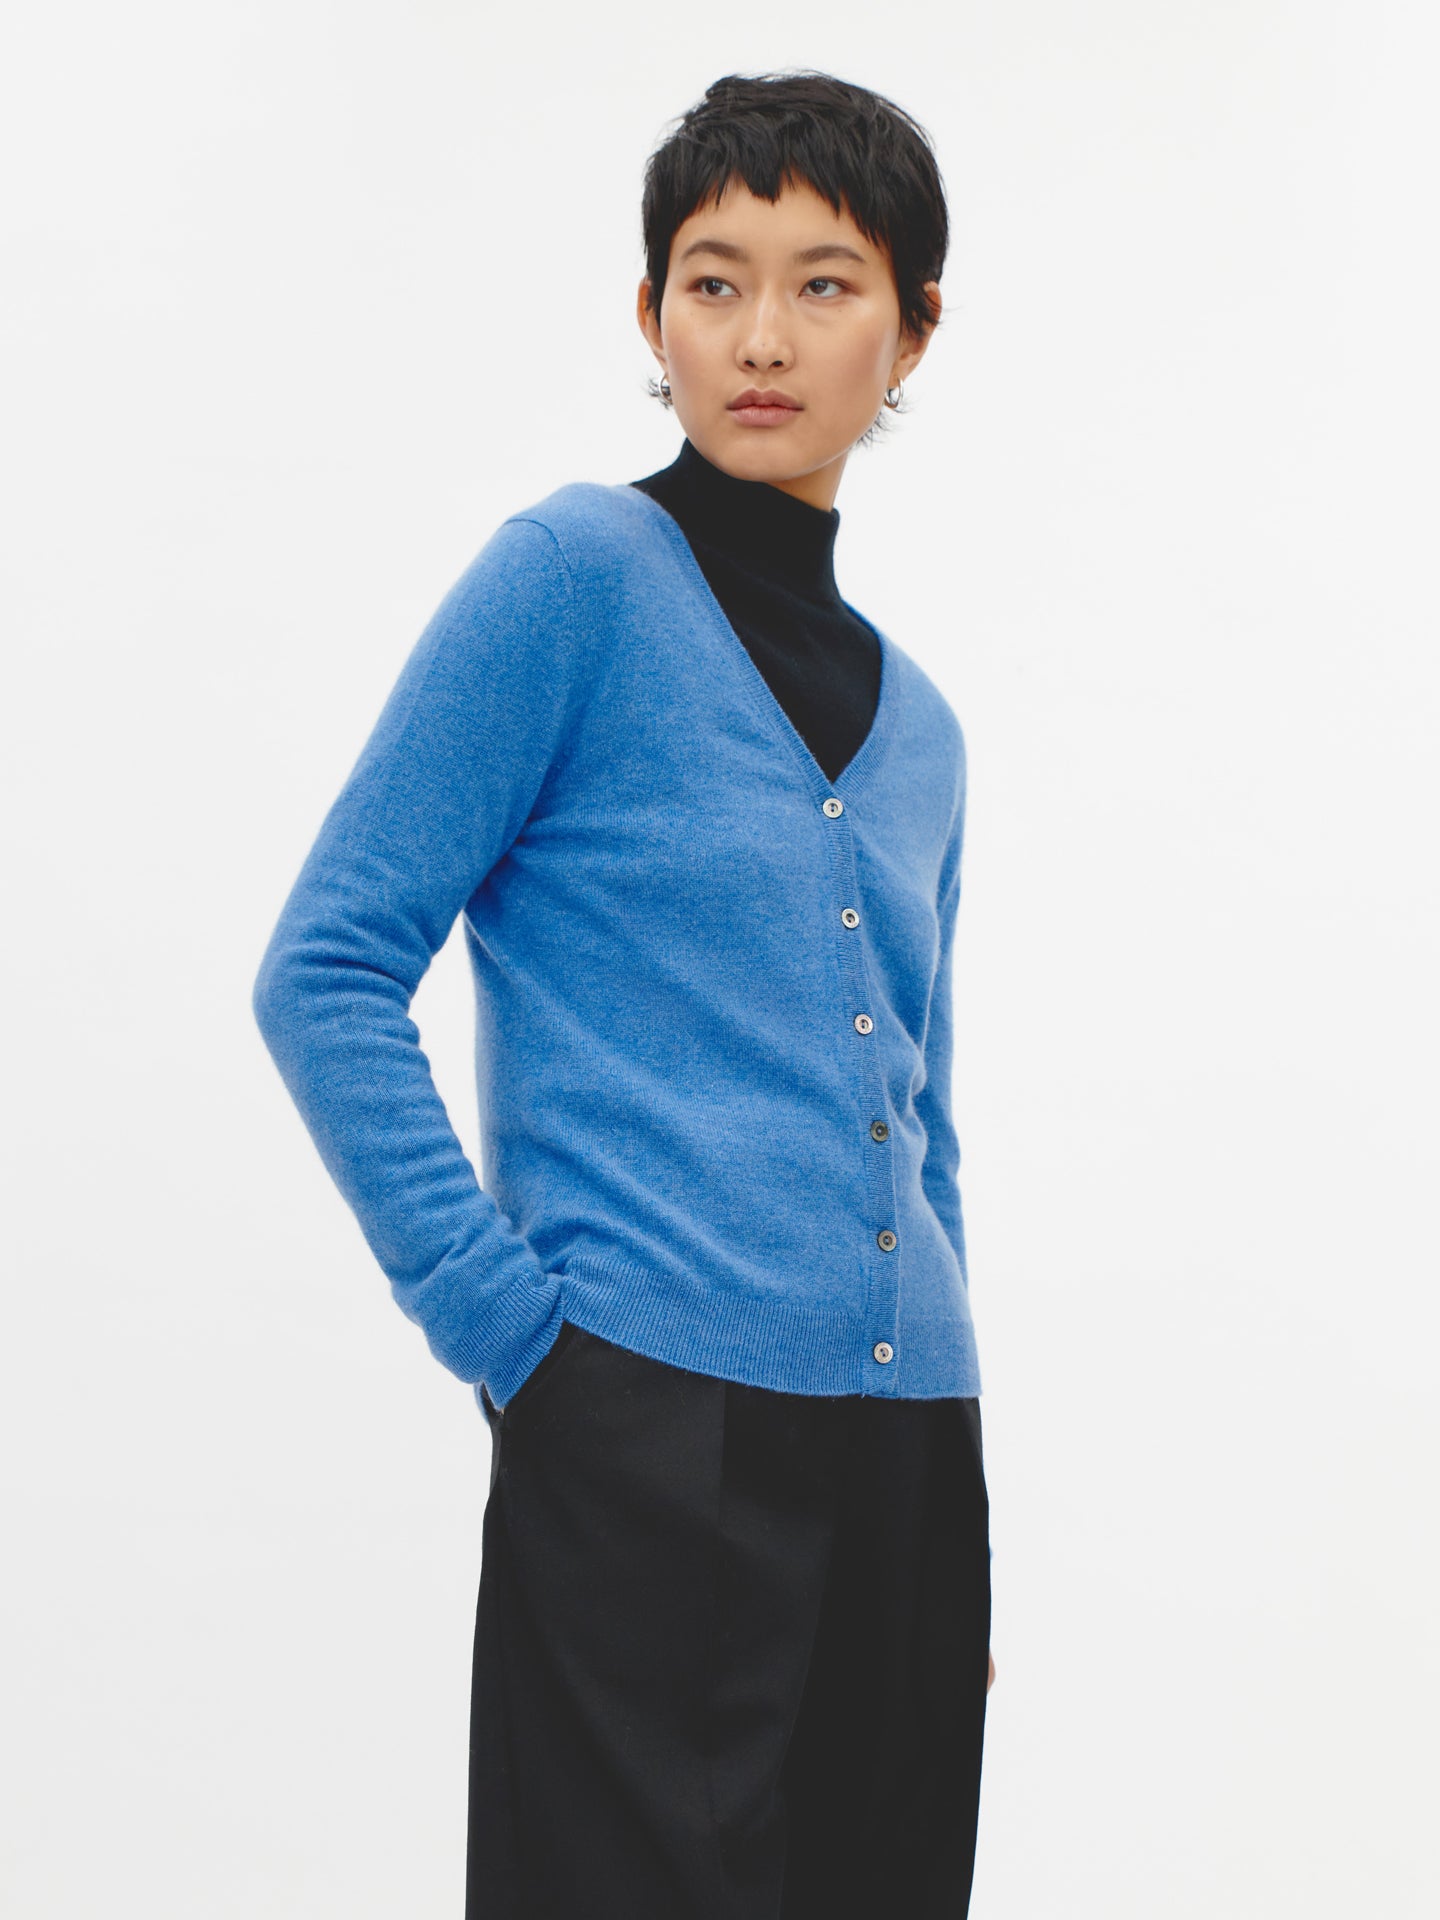 Women's Cashmere V-neck Cardigan Blue  - Gobi Cashmere